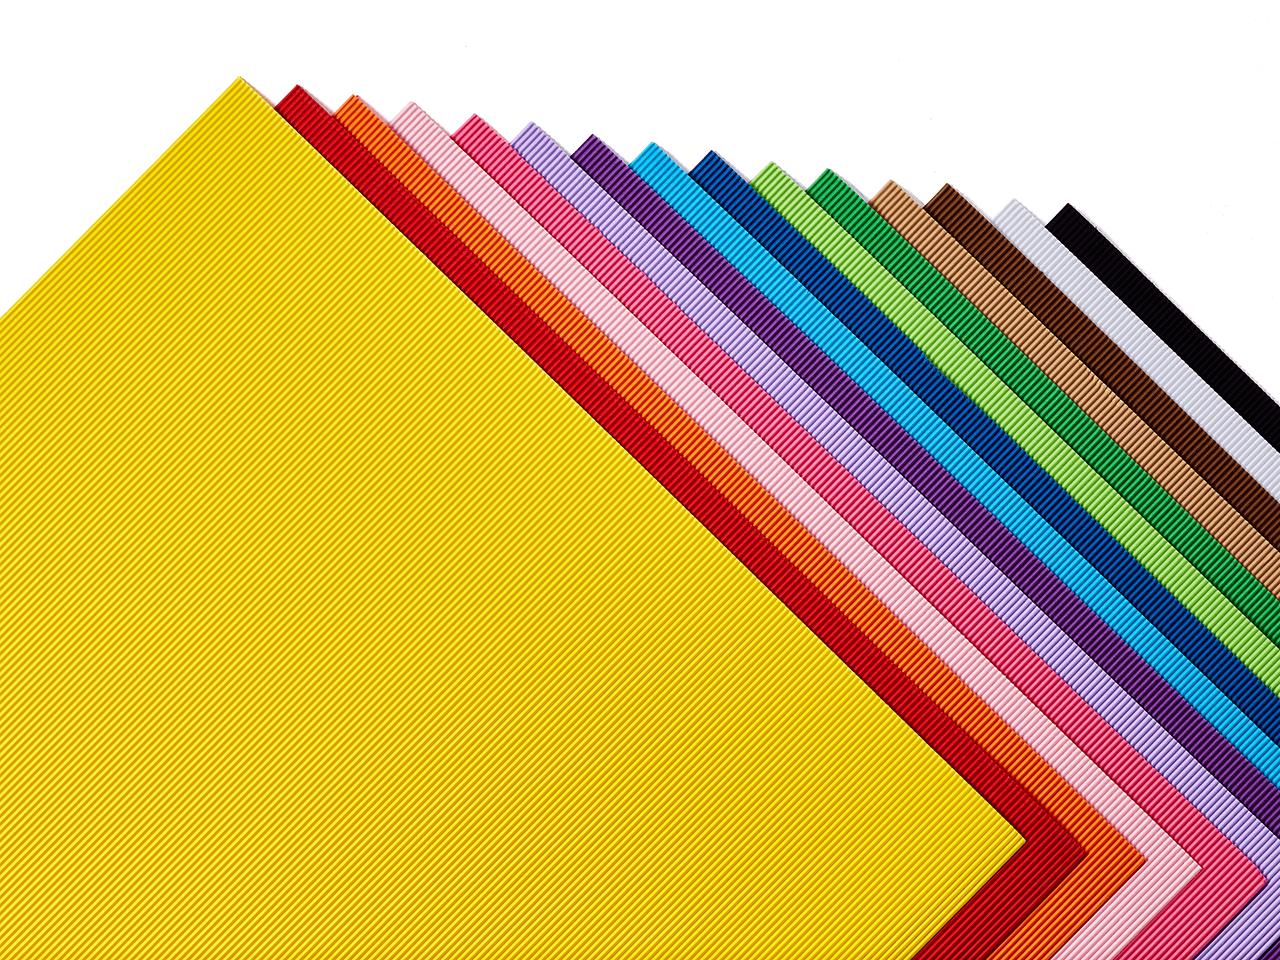 Colored Corrugated Cardboard Sheets Bright Corrugated Paper - Temu